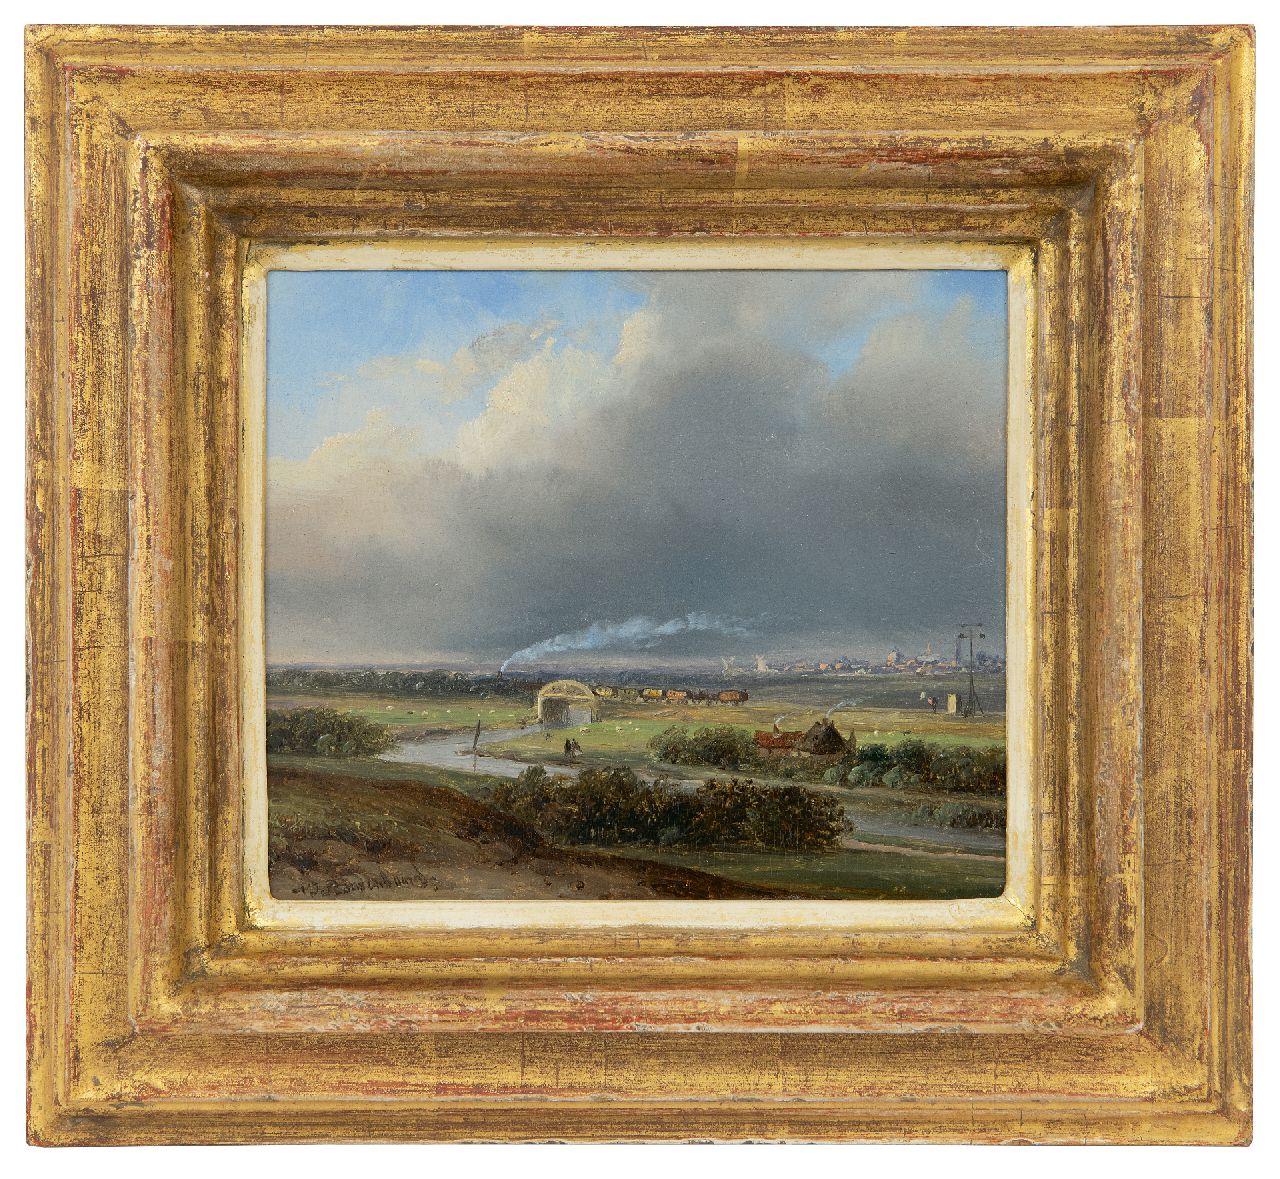 Roosenboom N.J.  | Nicolaas Johannes Roosenboom | Schilderijen te koop aangeboden | Panoramisch landschap met stoomtrein in de verte, olieverf op paneel 13,7 x 15,8 cm, gesigneerd linksonder